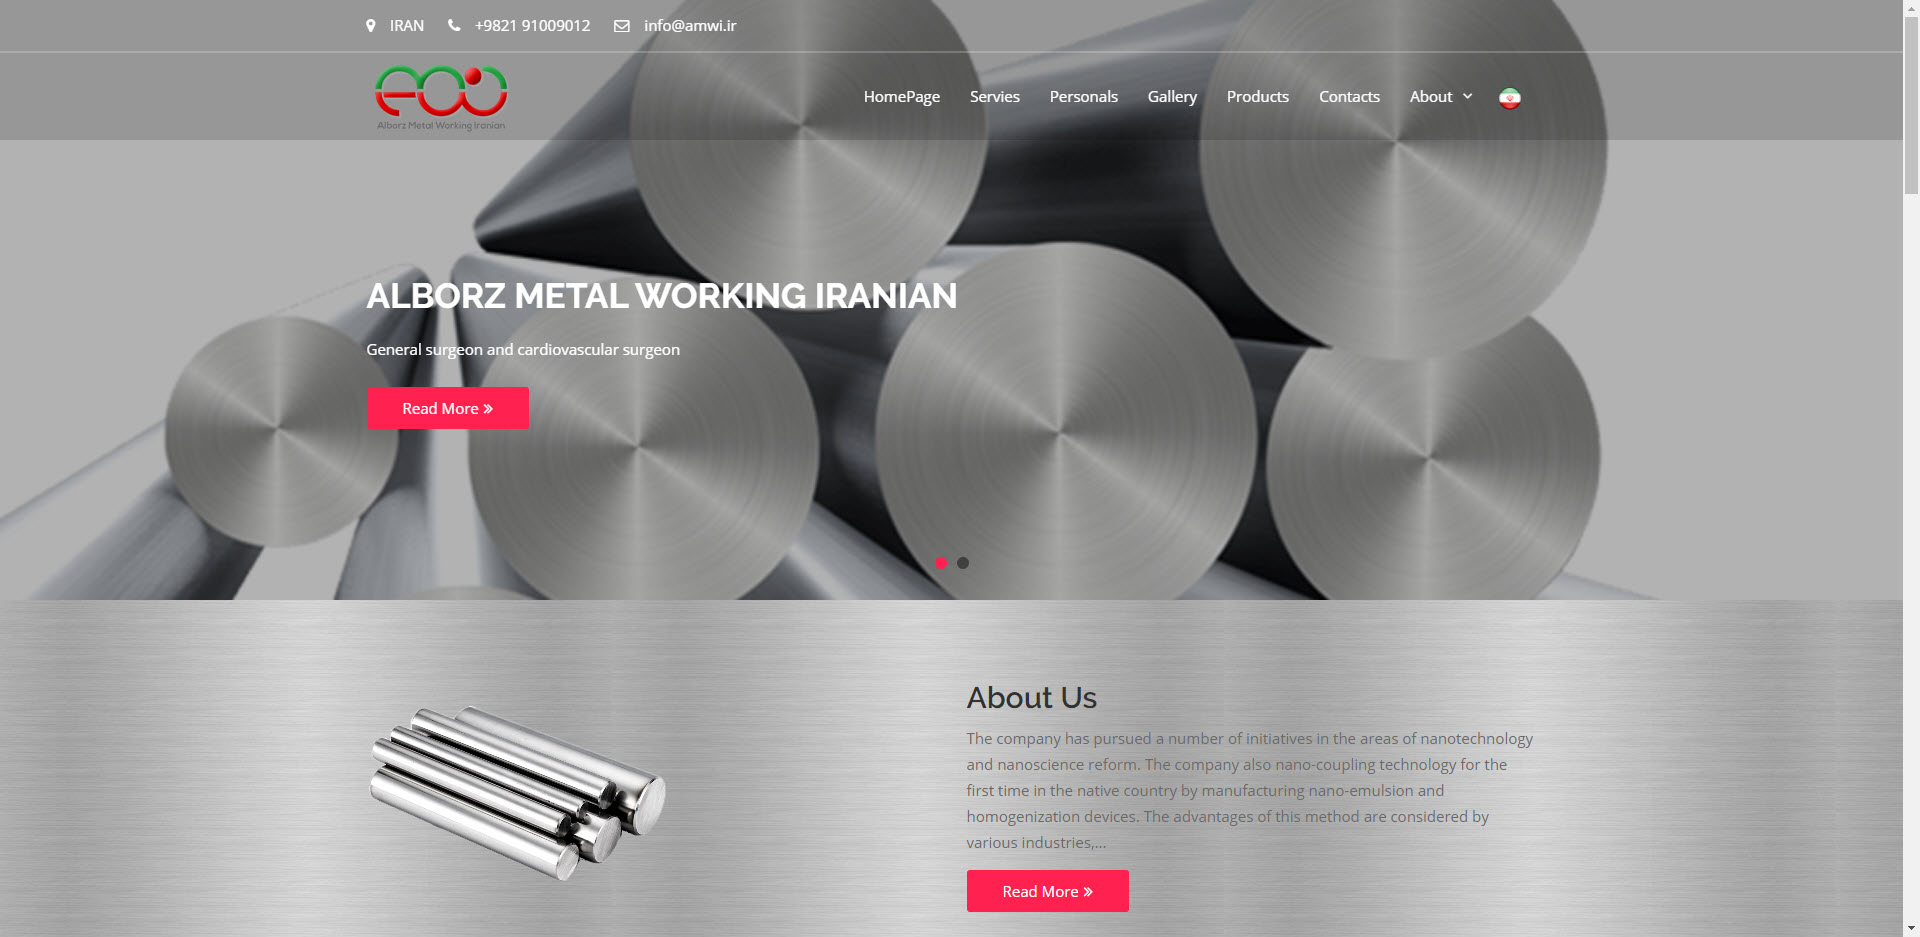 طراحی وب سایت شرکت البرز فلزکار ایرانیان